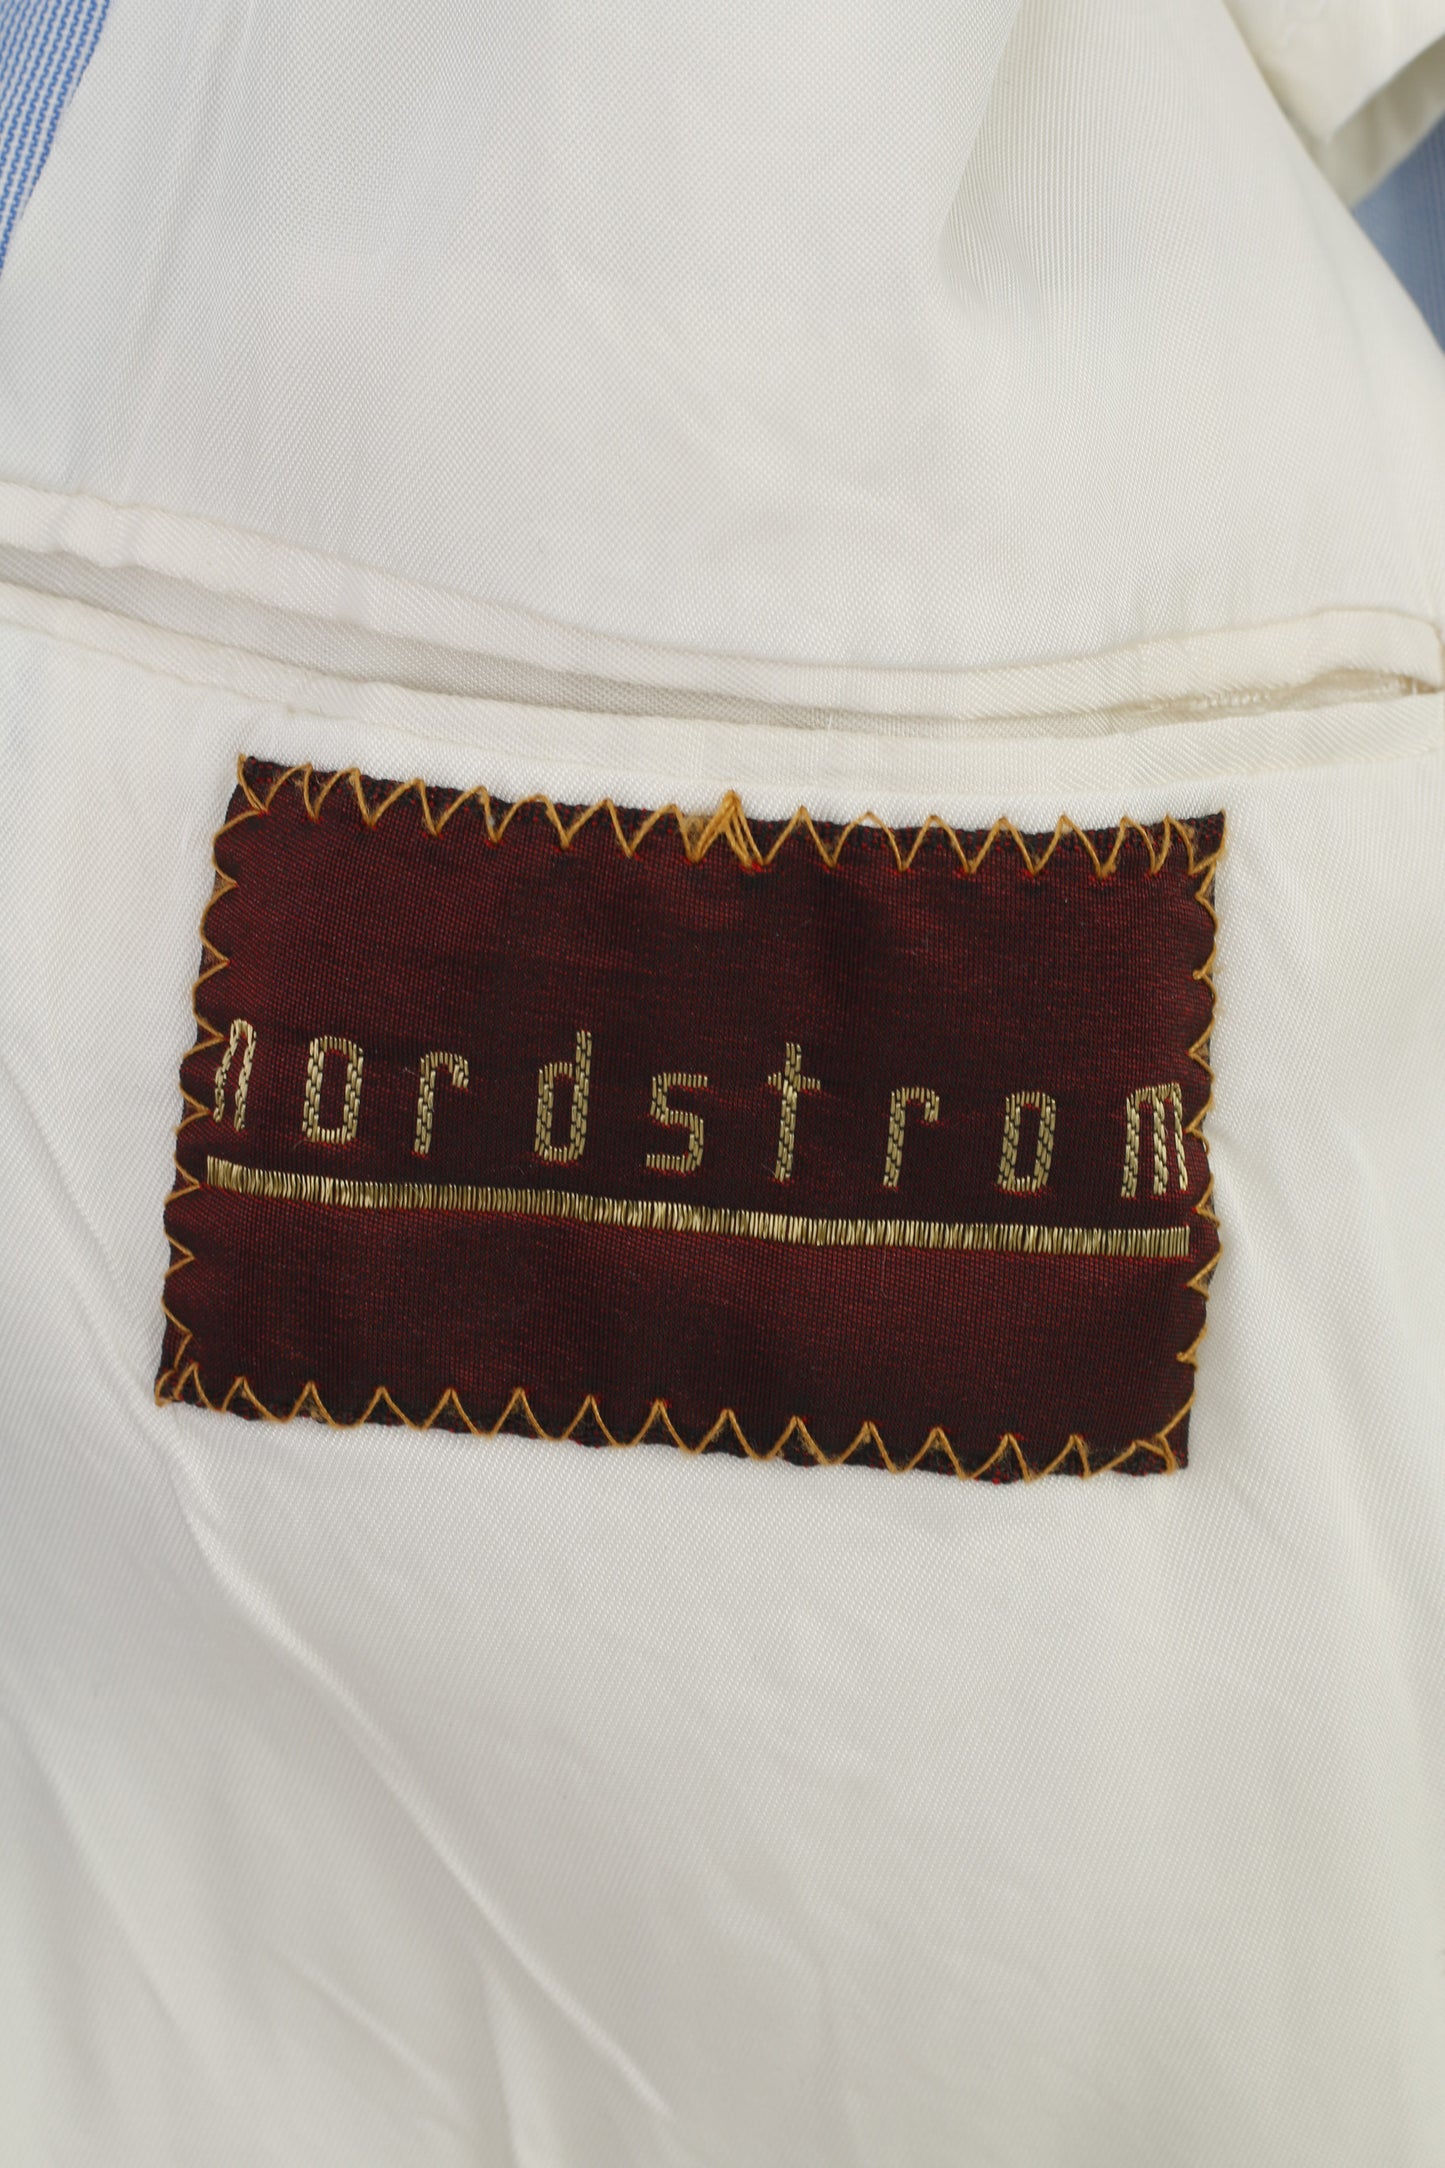 Nordstrom Men 50 Blazer Blue Striped Bottom Collar Elegant Shoulder Pads Jacket